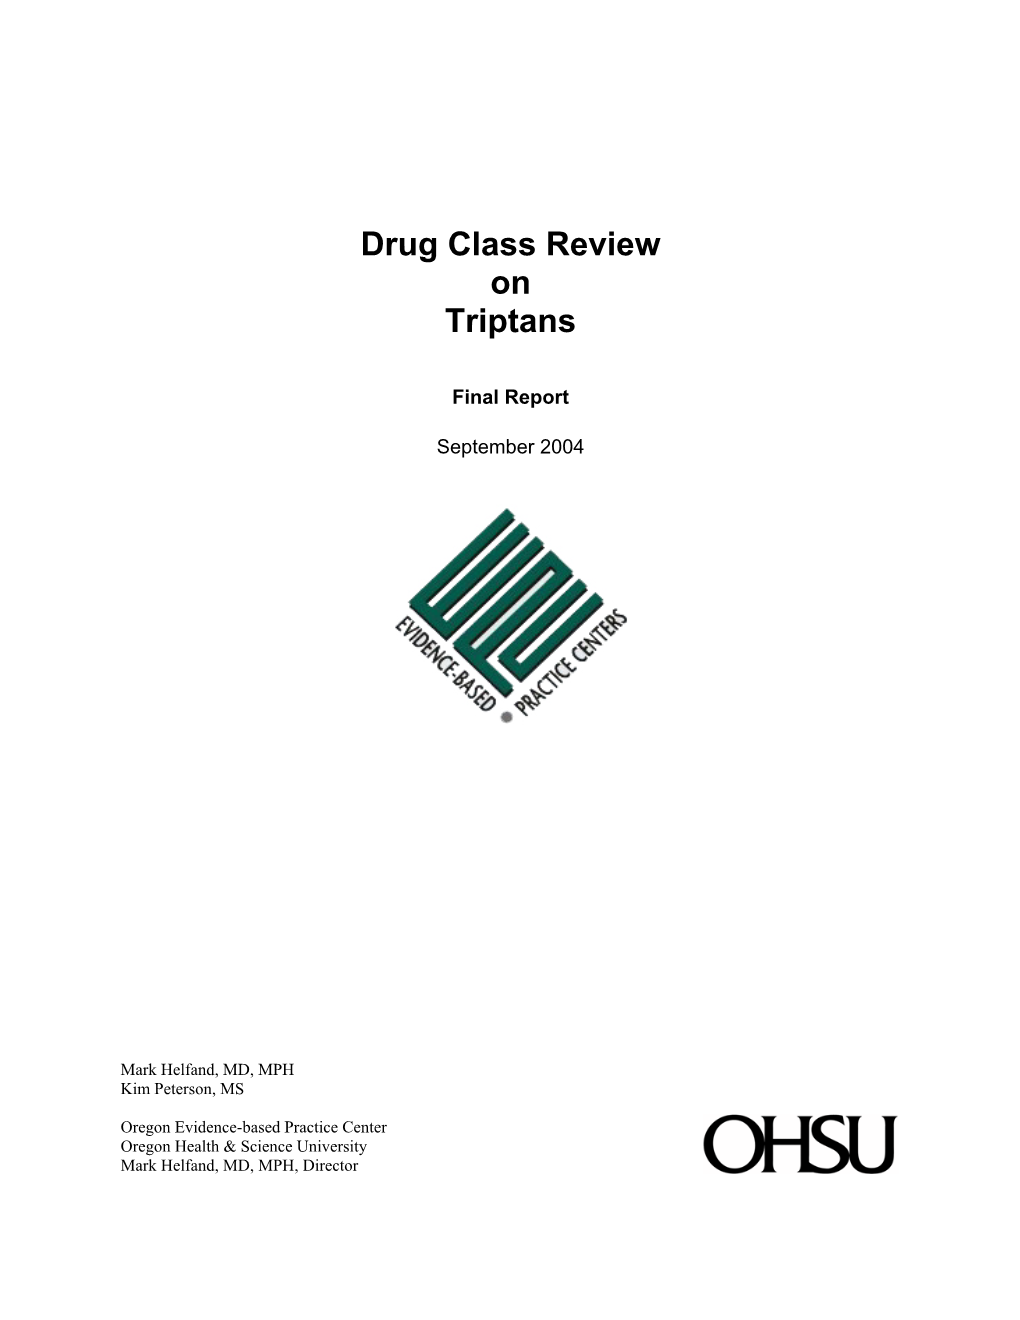 Drug Class Review on Triptans